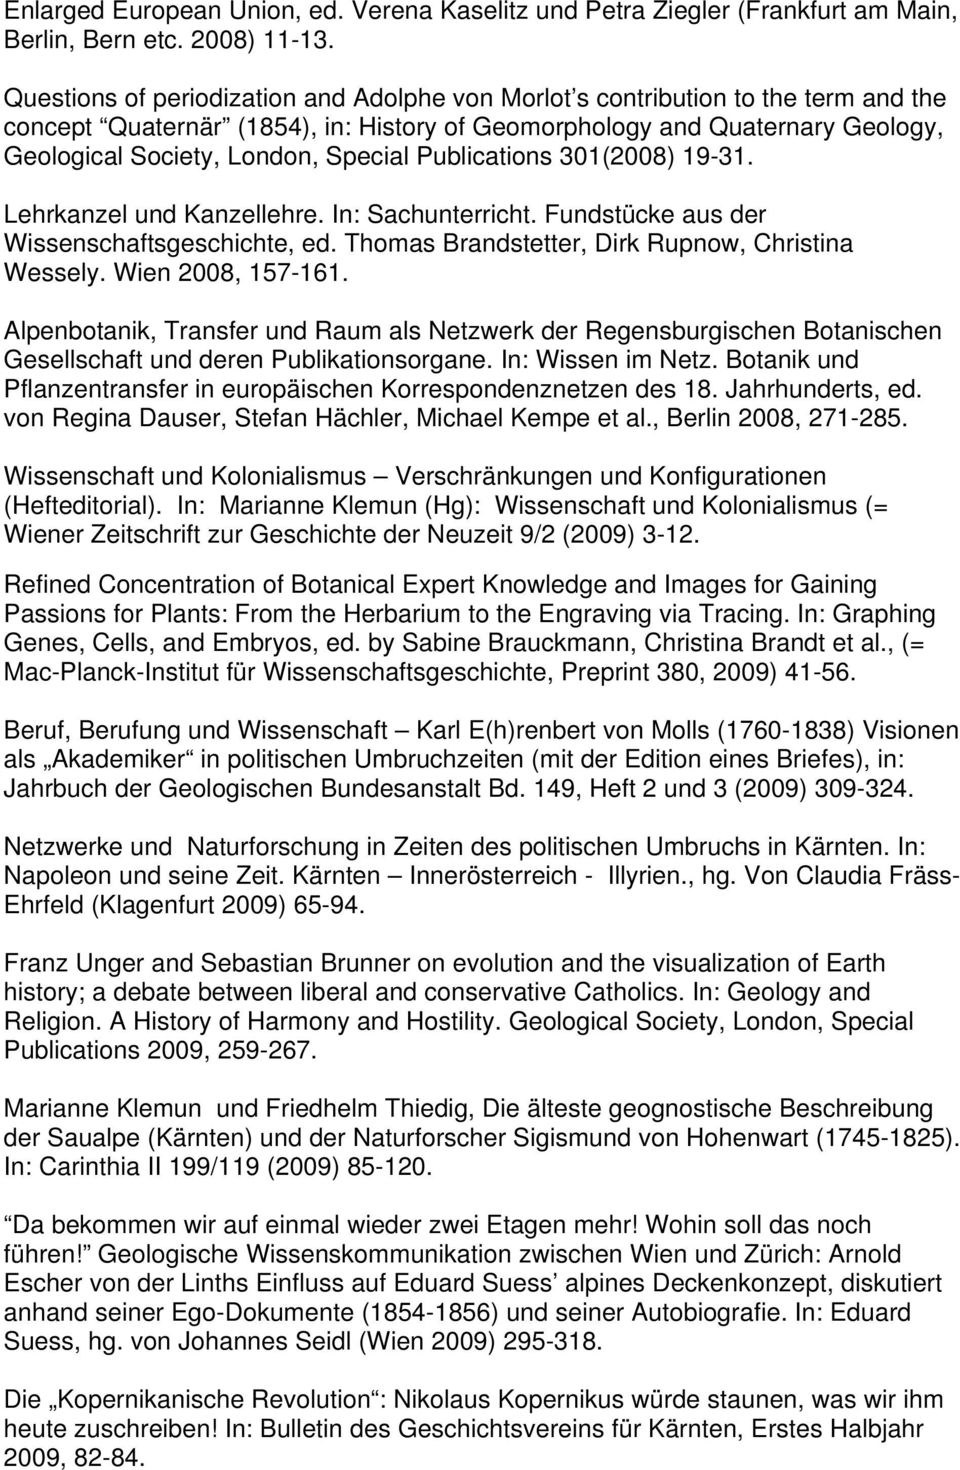 Publications 301(2008) 19-31. Lehrkanzel und Kanzellehre. In: Sachunterricht. Fundstücke aus der Wissenschaftsgeschichte, ed. Thomas Brandstetter, Dirk Rupnow, Christina Wessely. Wien 2008, 157-161.